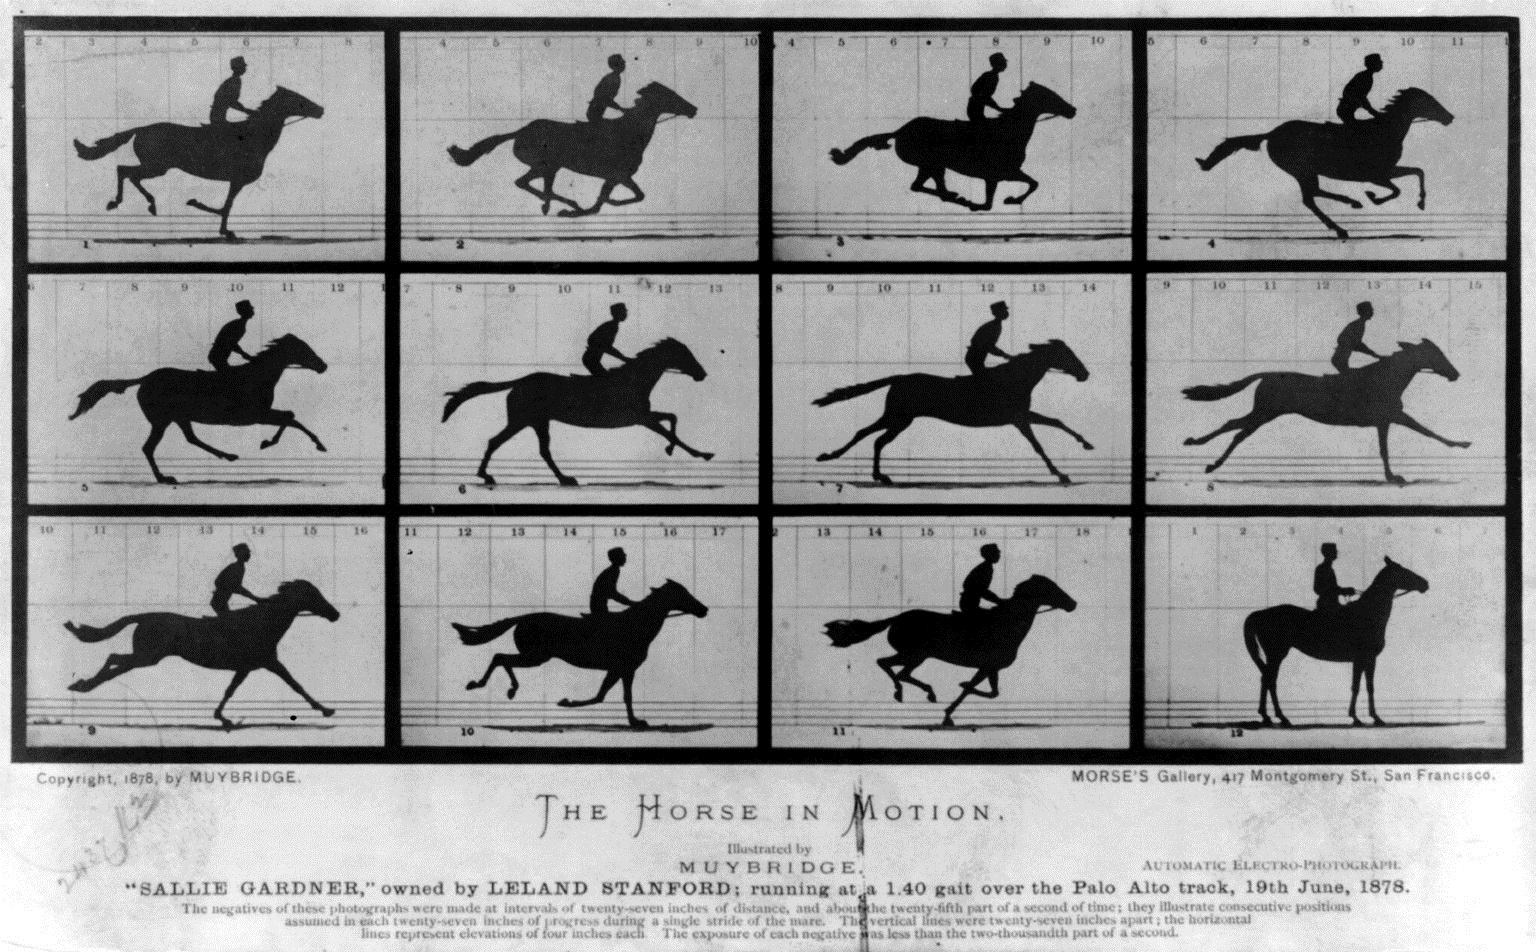 12 صورة من 12 كاميرا التقطها ميوبريدج ليثبت أن الحصان يرفع حوافره الأربعة عن الأرض (مواقع التواصل)